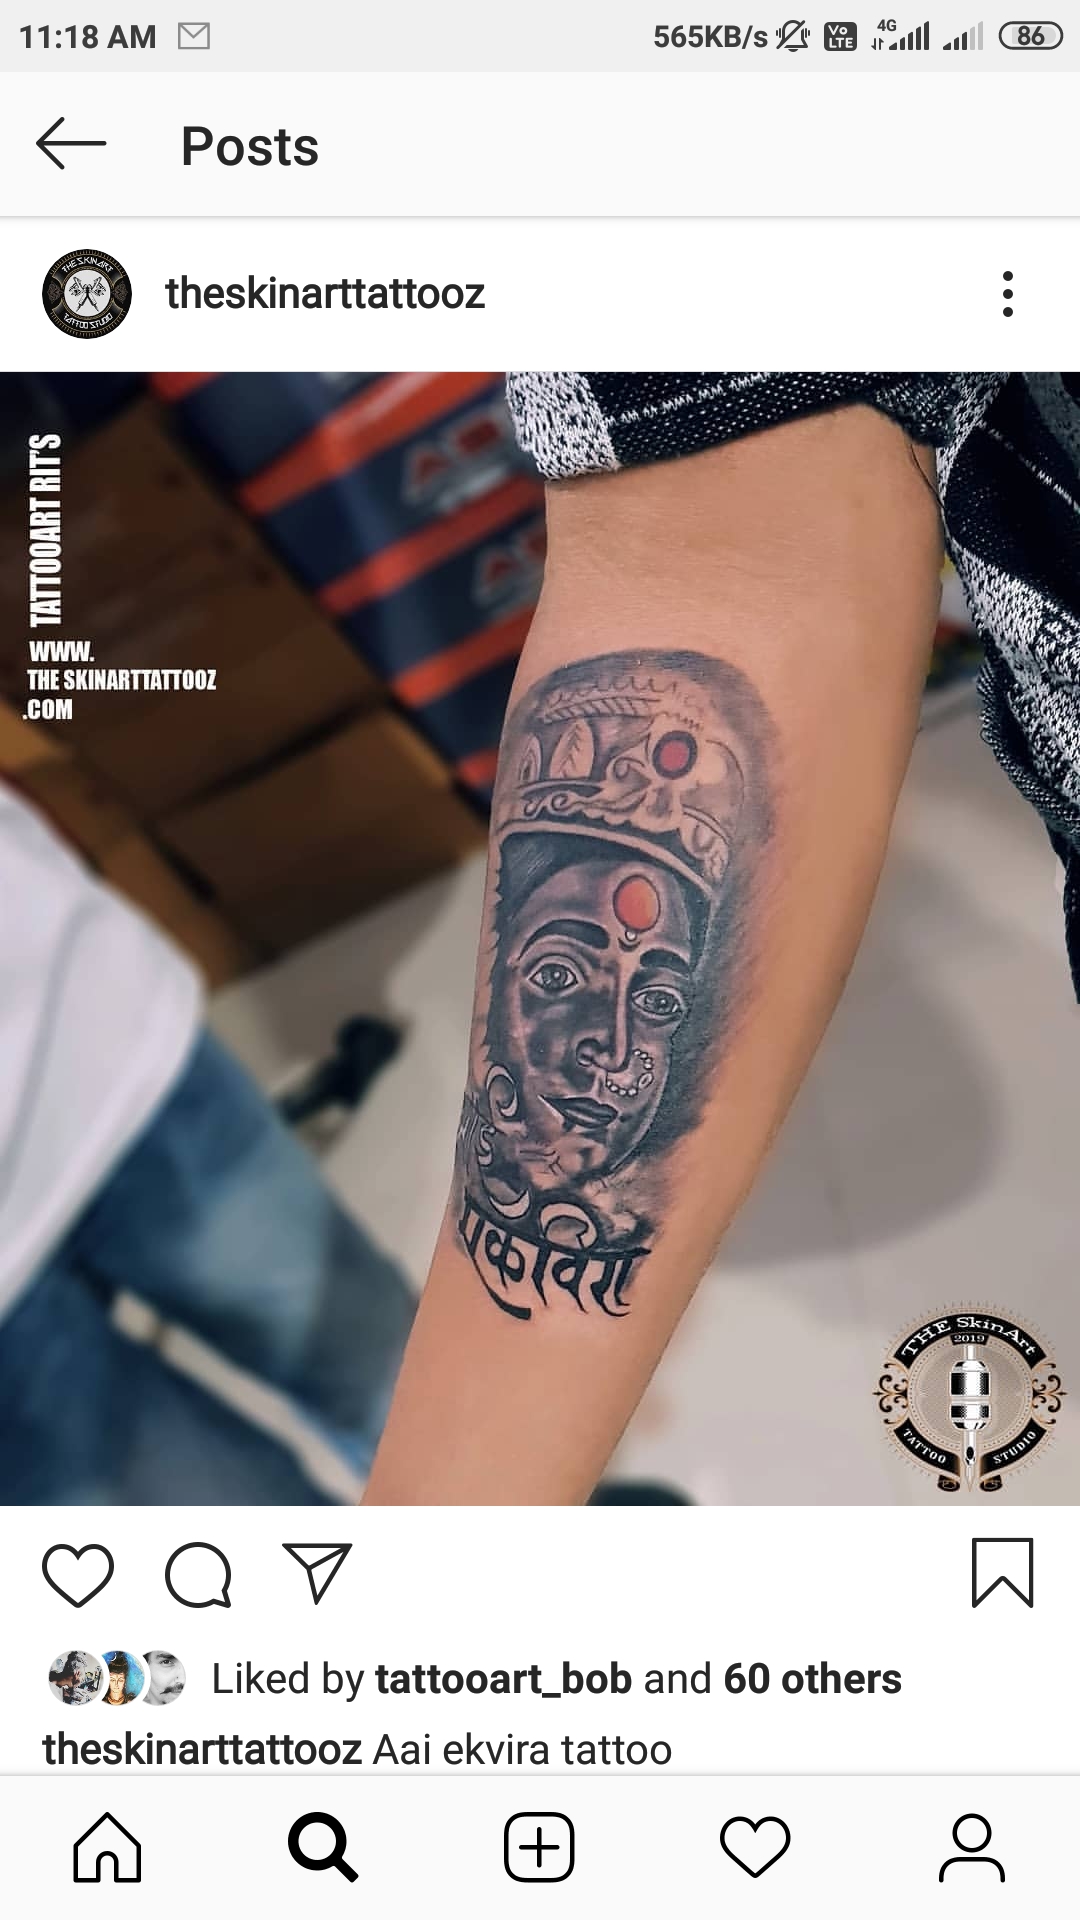 New 2018 work by mukesh tattoo artist Ekvira Aai Tattoo professional Tattoo  studio Mumbai in Thane comment 8691891431 9137  Tattoo studio Tattoo  artists Tattoos